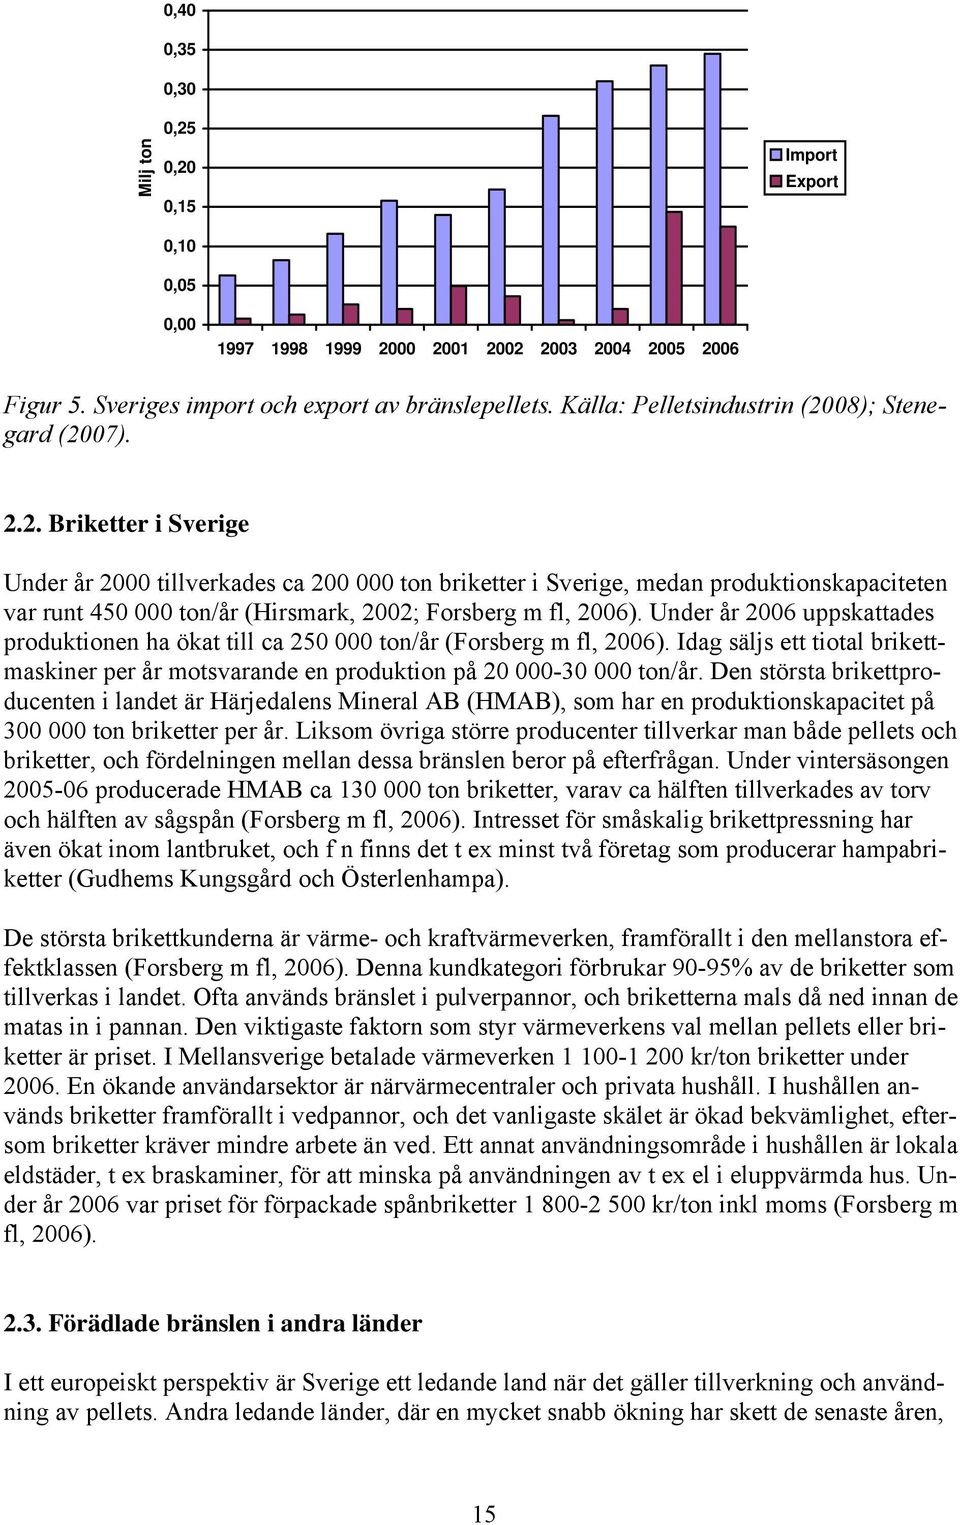 08); Stenegard (2007). 2.2. Briketter i Sverige Under år 2000 tillverkades ca 200 000 ton briketter i Sverige, medan produktionskapaciteten var runt 450 000 ton/år (Hirsmark, 2002; Forsberg m fl, 2006).